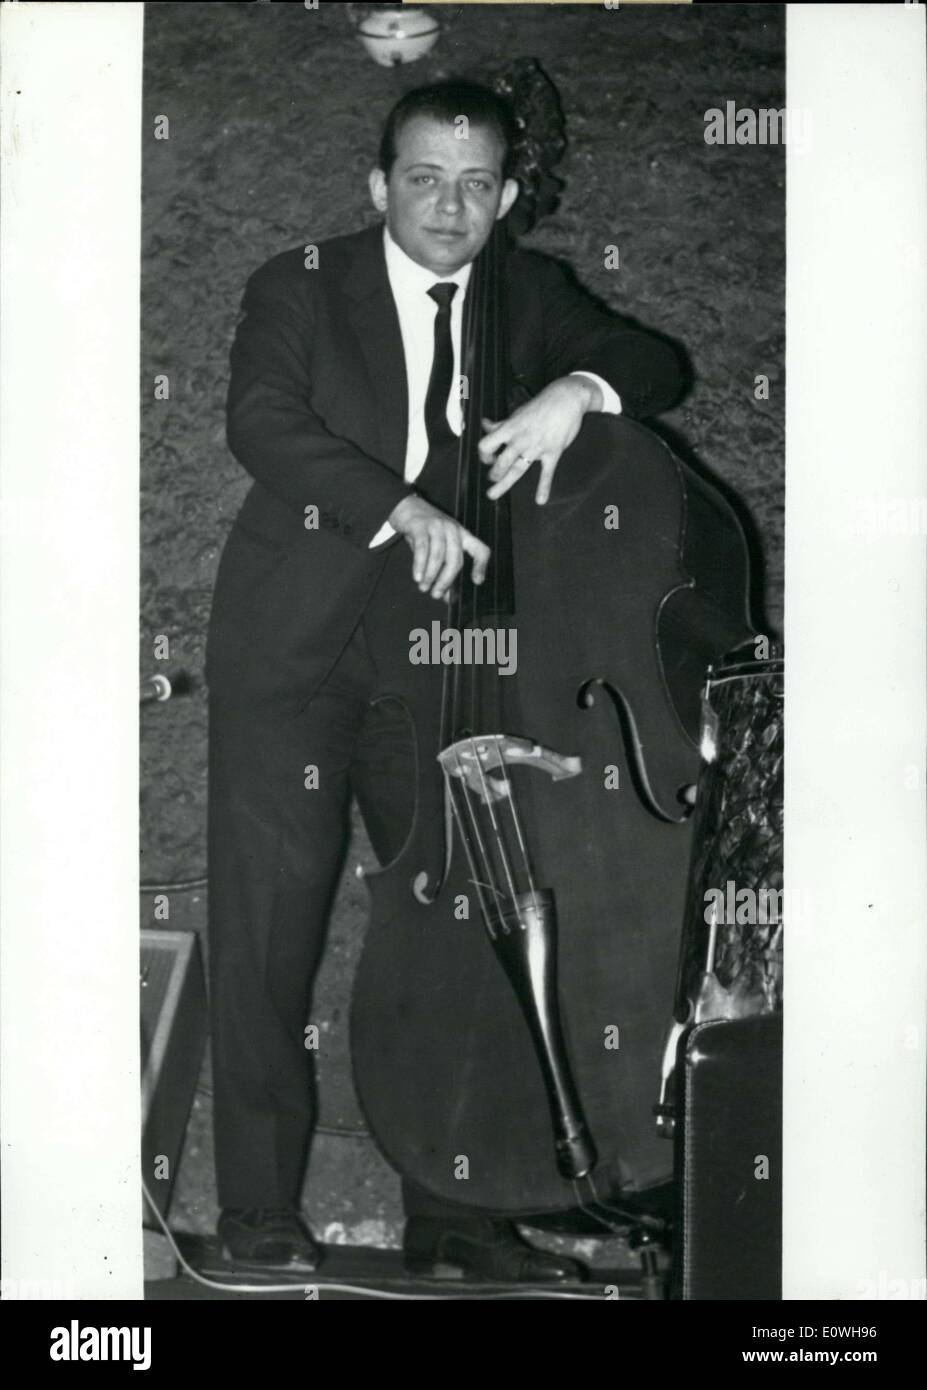 15 janvier 1963 - L'Académie du Jazz, sous la présidence de Jean Cocteau vient de donner le prix Django Reinhardt pour 1962 à band-leader et double-bassiste Pierre Michelot. Photo : Michelot avec son instrument. Banque D'Images